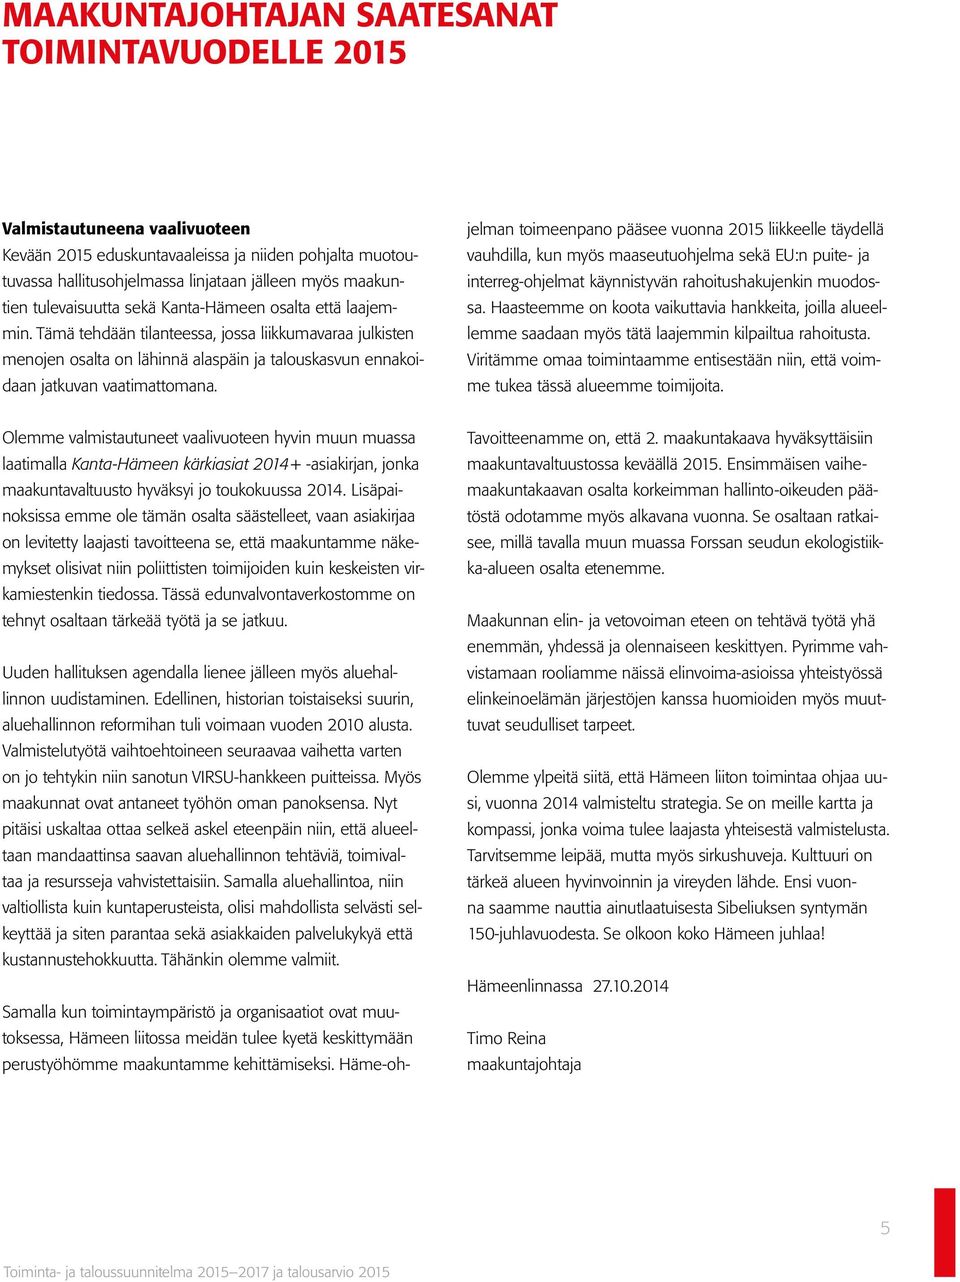 Olemme valmistautuneet vaalivuoteen hyvin muun muassa laatimalla Kanta-Hämeen kärkiasiat 2014+ -asiakirjan, jonka maakuntavaltuusto hyväksyi jo toukokuussa 2014.